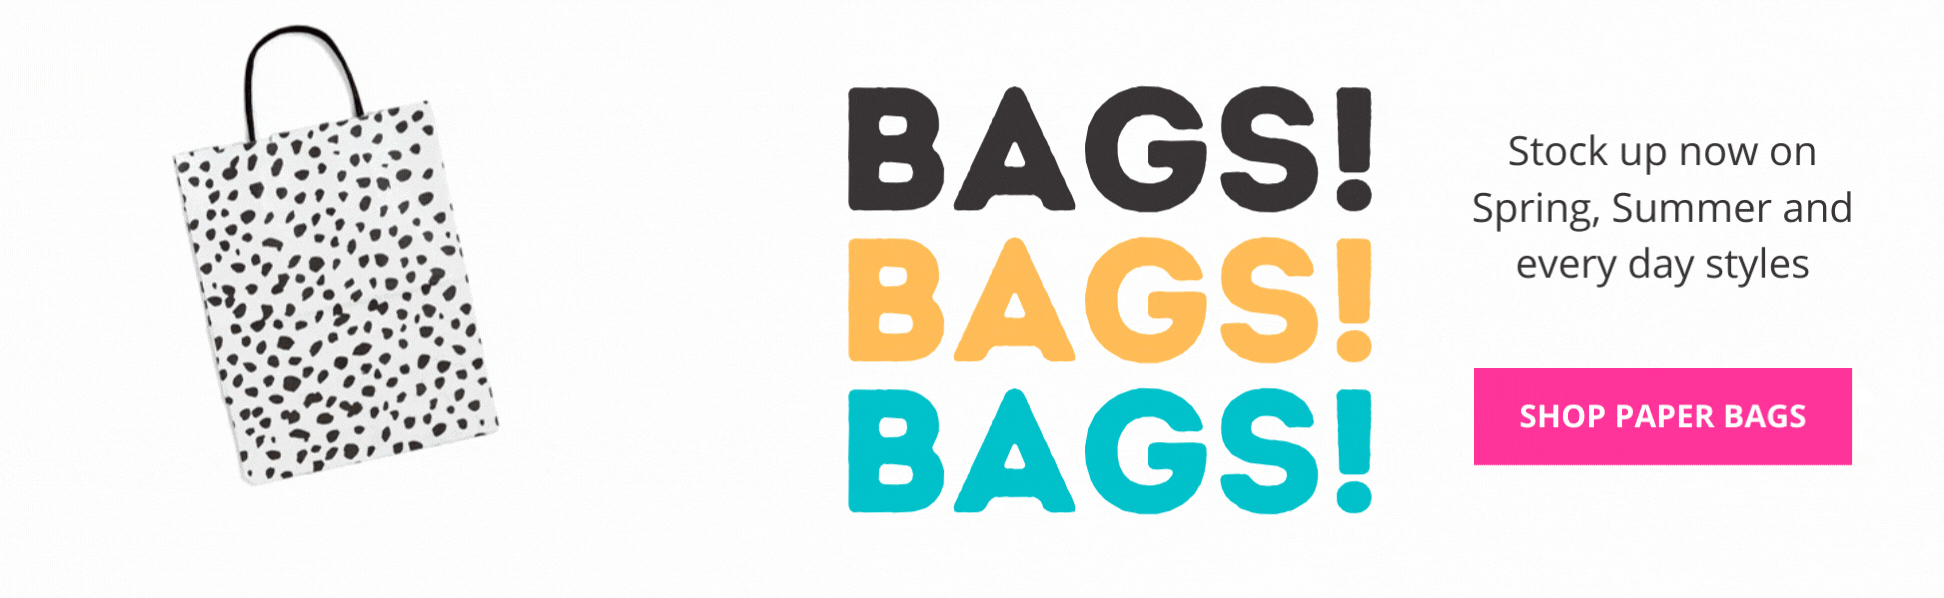 Bags Bags Bags